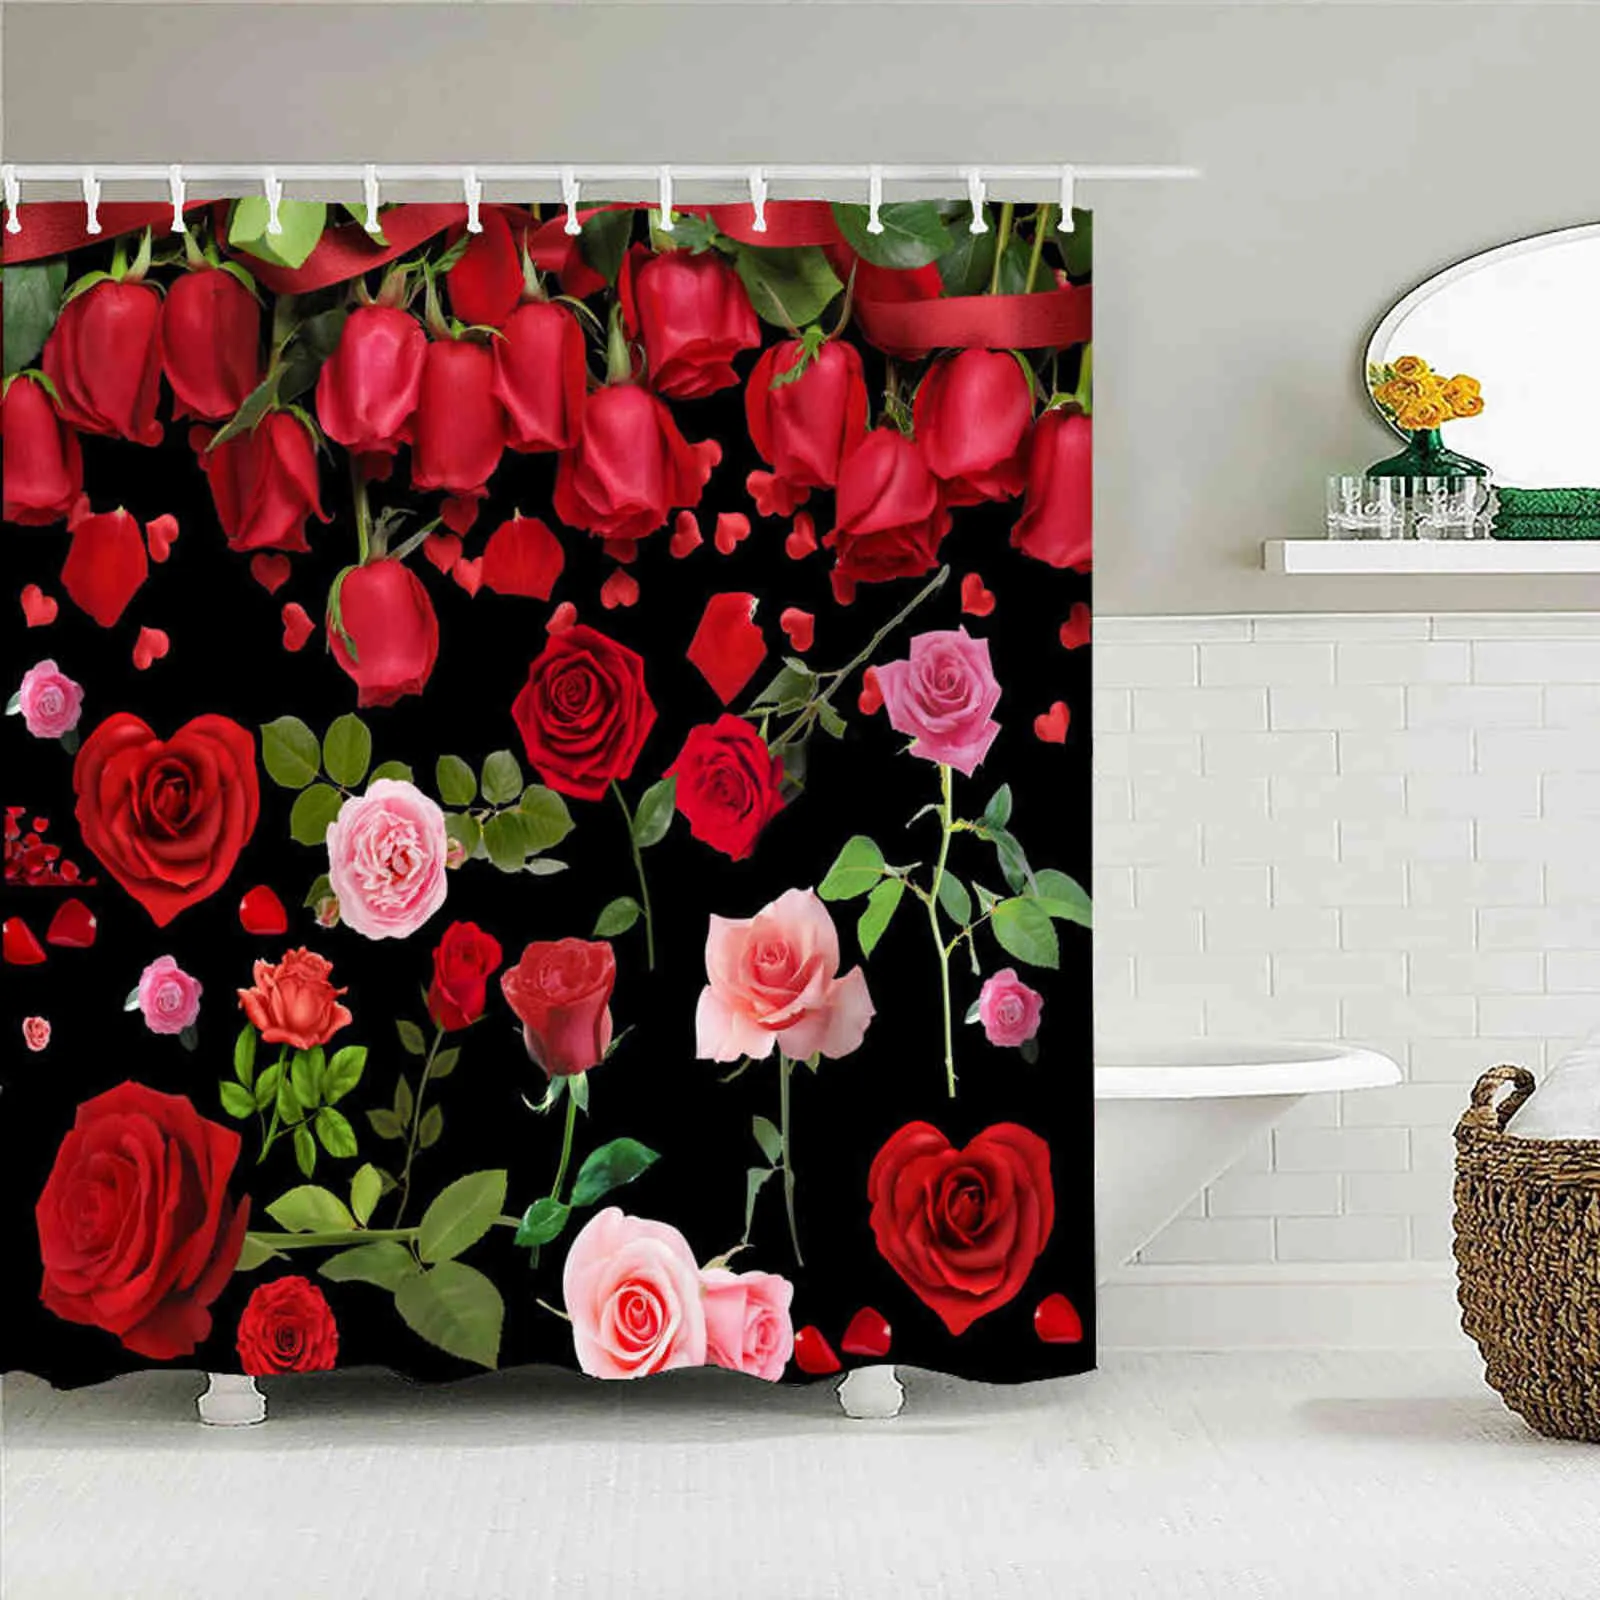 3D Rose Rose Plantas Flores Banheiro Cortina Amor Romance Banho Cortina Água Devão Cortinas Decoração 240x180 com Ganchos 211116